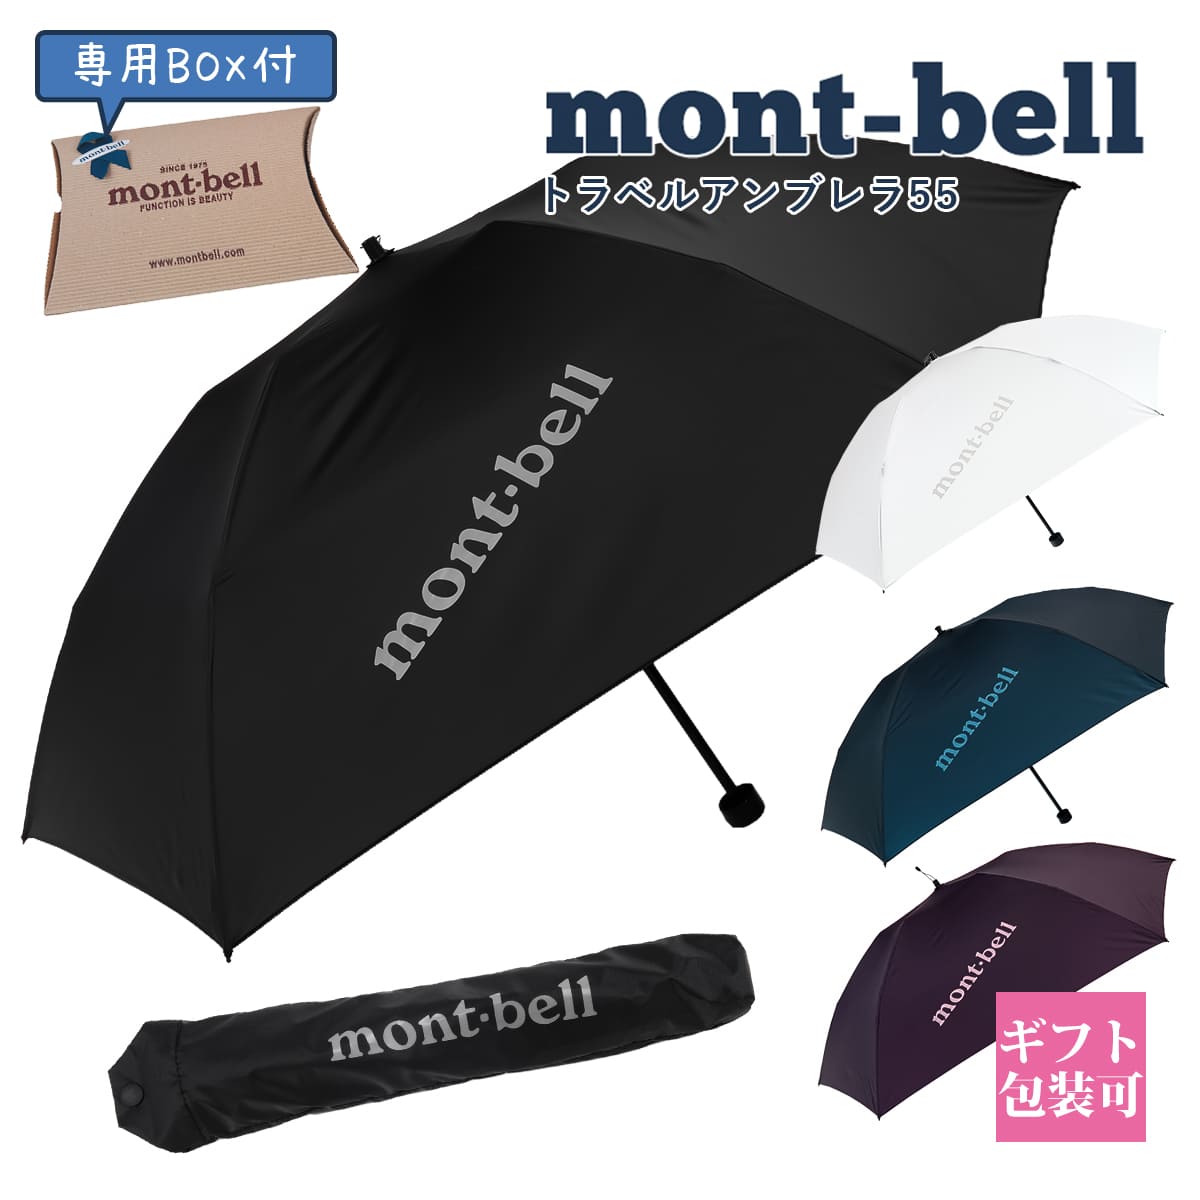 【楽天市場】モンベル 折りたたみ傘 mont-bell 折りたたみ傘 